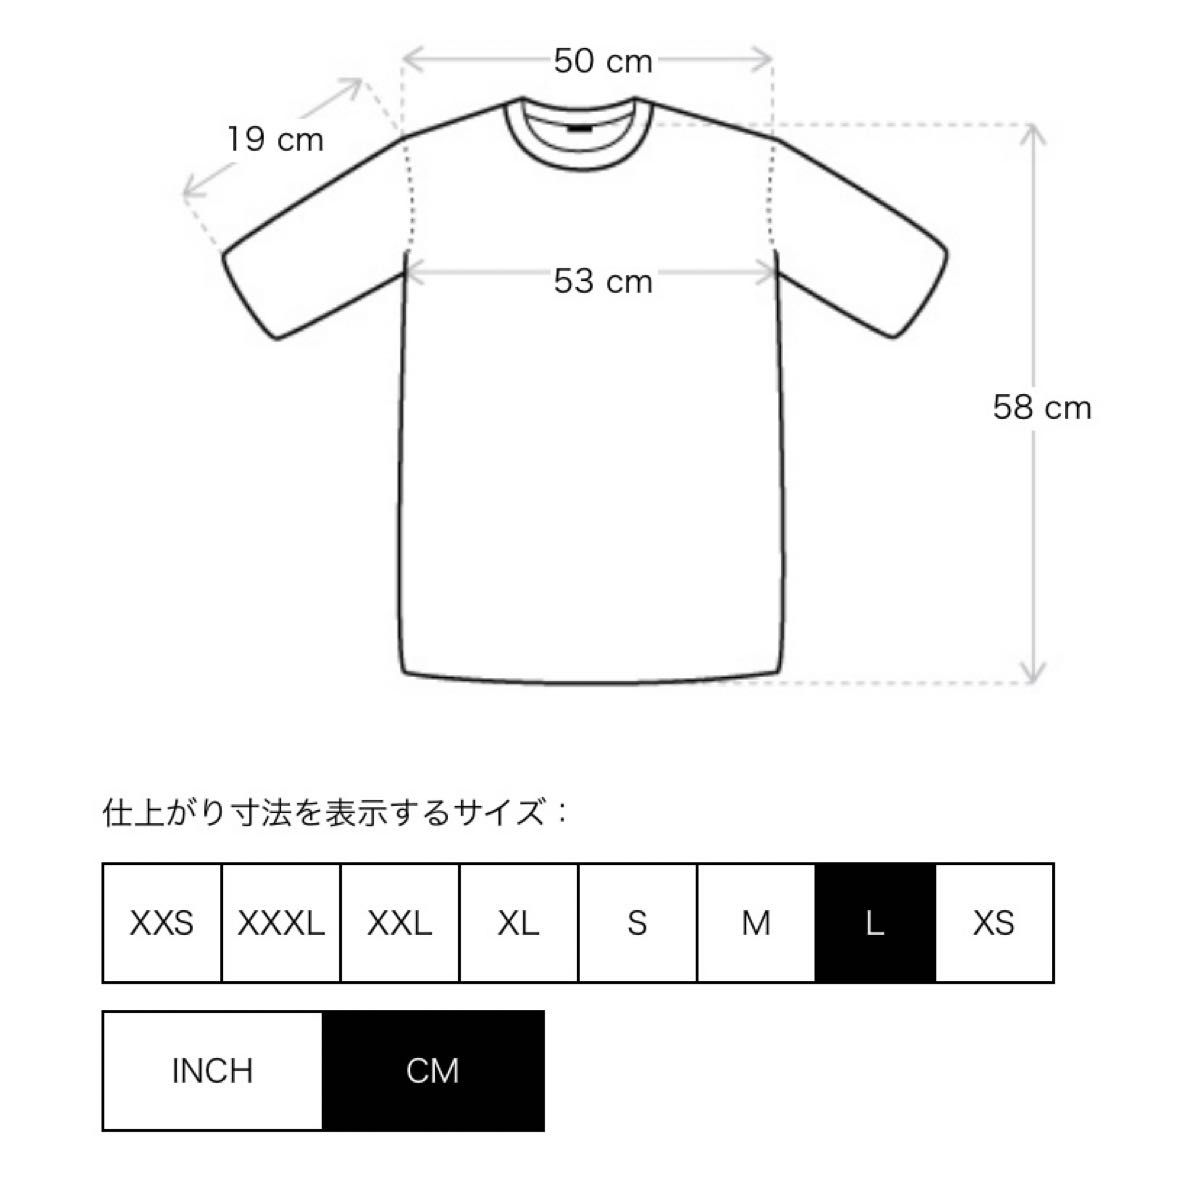 FOG エッセンシャルズ Tシャツ グレー L ラバー ロゴ 半袖Tシャツ ロゴTシャツ フィアオブゴッド essentials